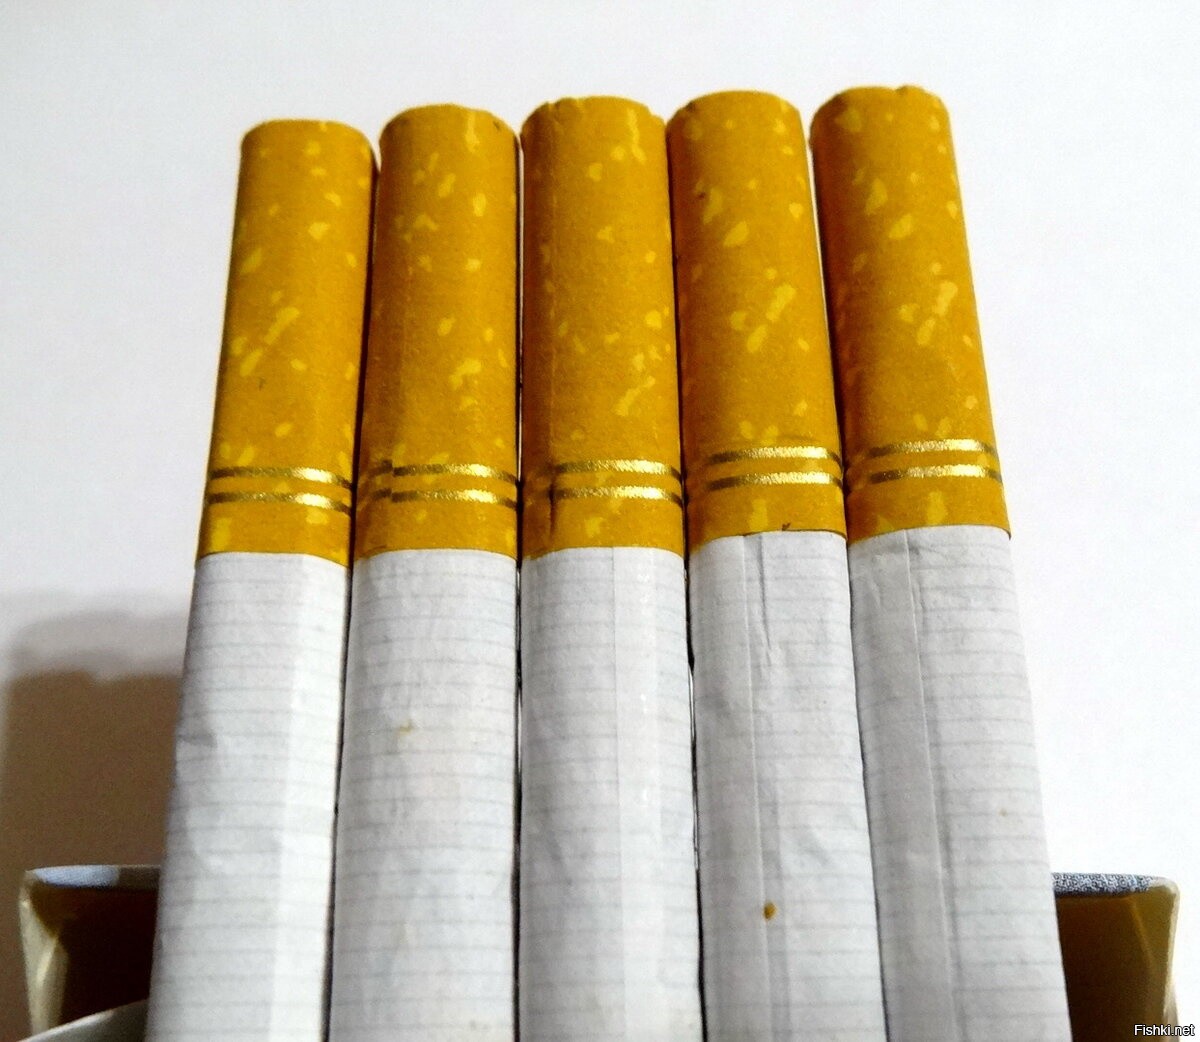 Сигареты с фильтром названия. Сигареты с фильтром. Сигареты с желтым фильтром. Сигареты с золотой полоской. Сигареты с золотой полоской на фильтре.